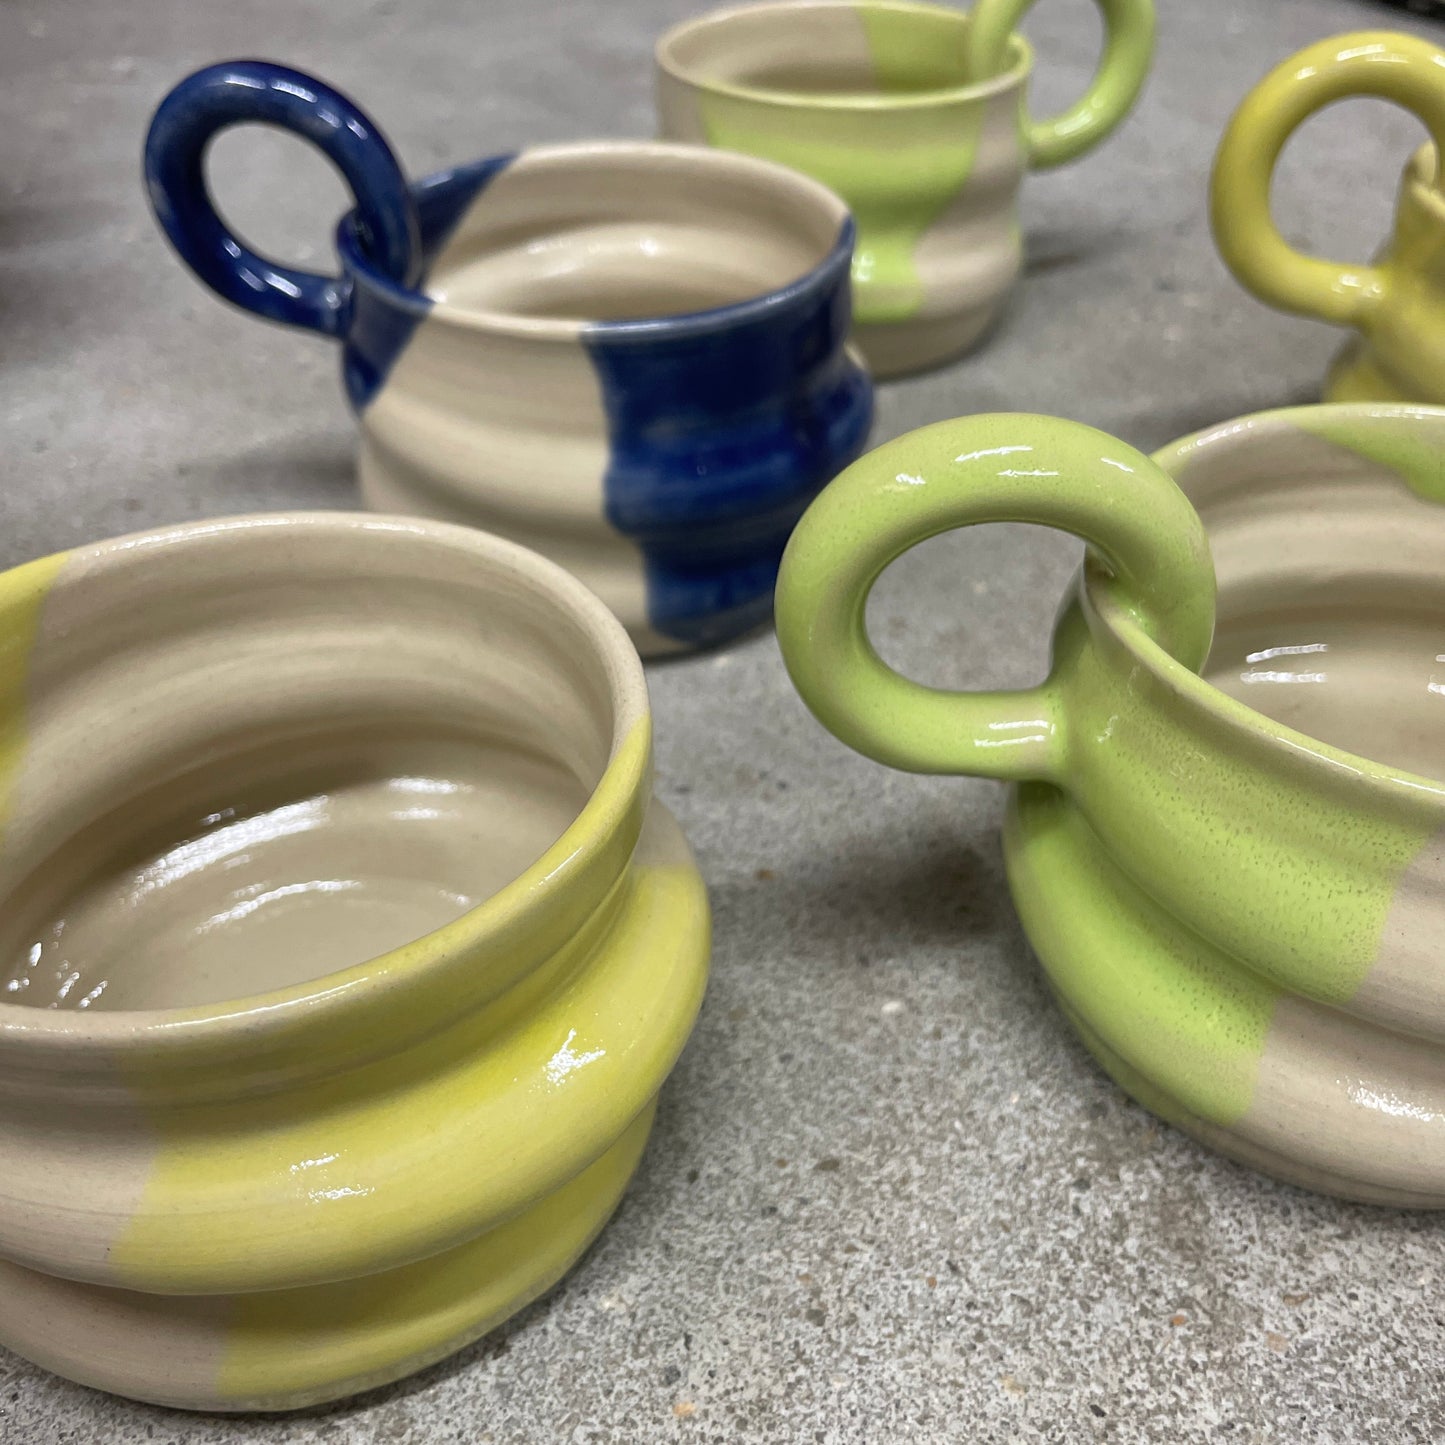 Keramik Studiet - Hånddrejet kop - Lime